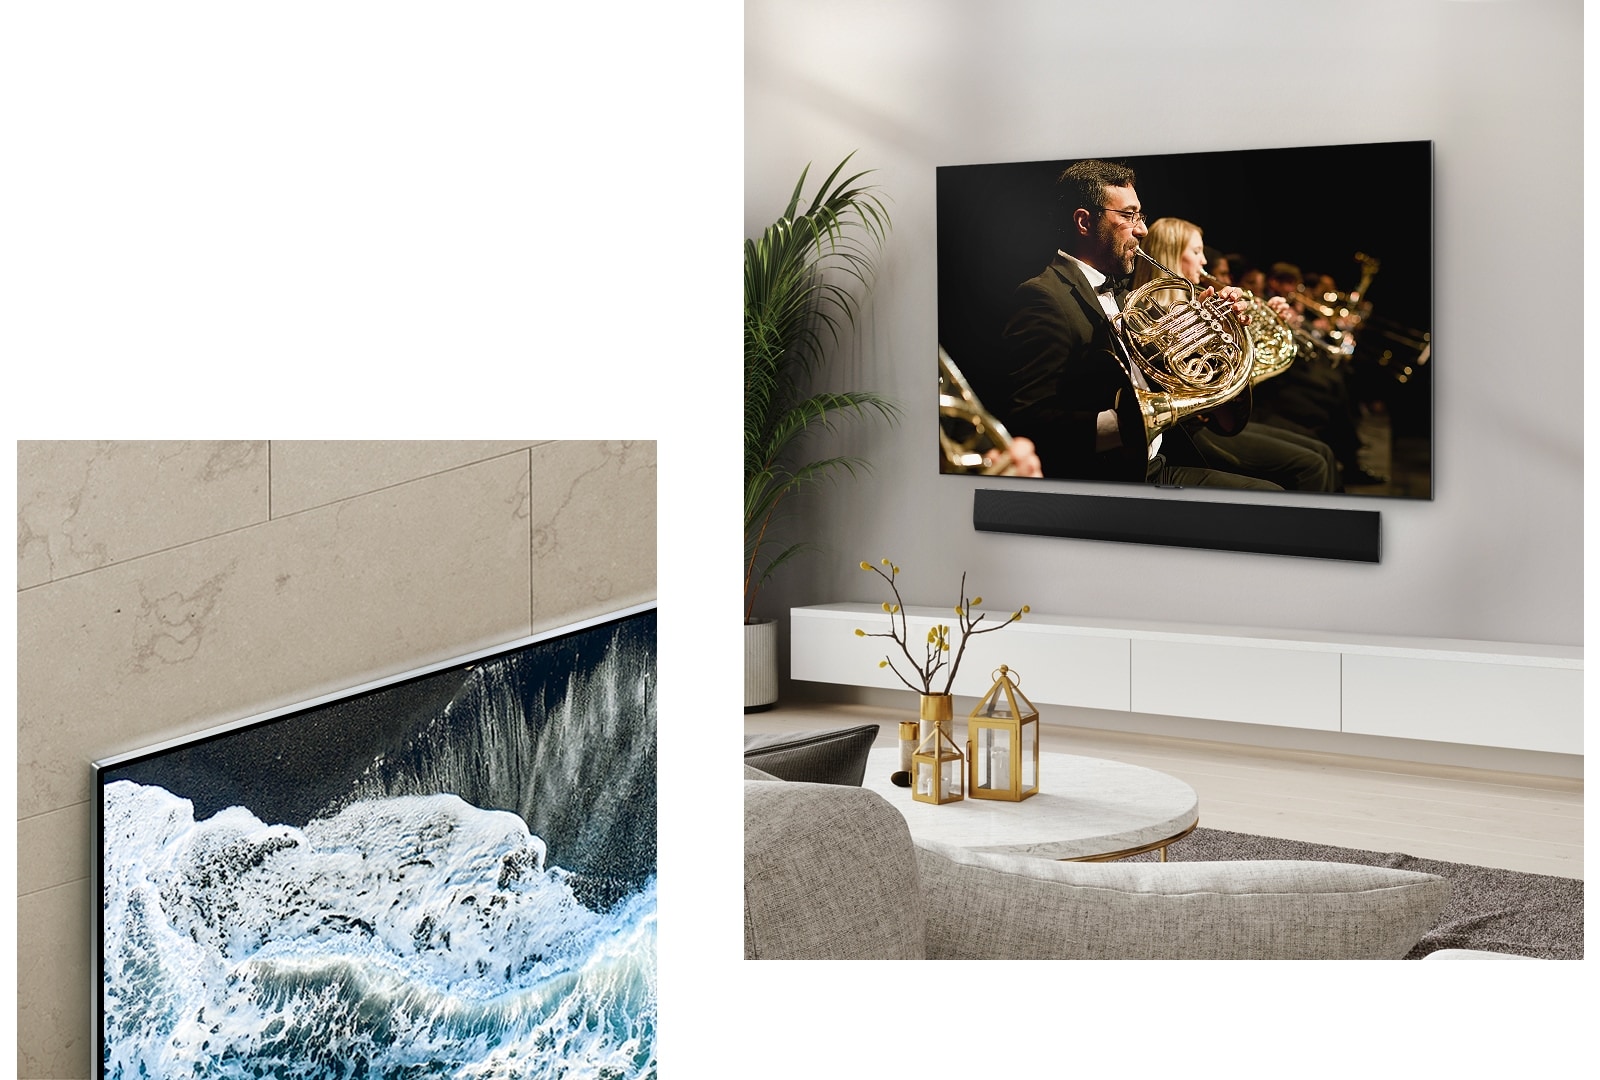 Der LG OLED evo TV G4 in einem perspektivischen Winkel vor einer marmorierten Wand, der zeigt, wie der Fernseher mit der Wand verschmilzt. Der LG OLED evo TV G4 und eine LG Soundbar in einem minimalistischen Wohnraum flach an der Wand mit einer Orchesteraufführung auf dem Bildschirm. 